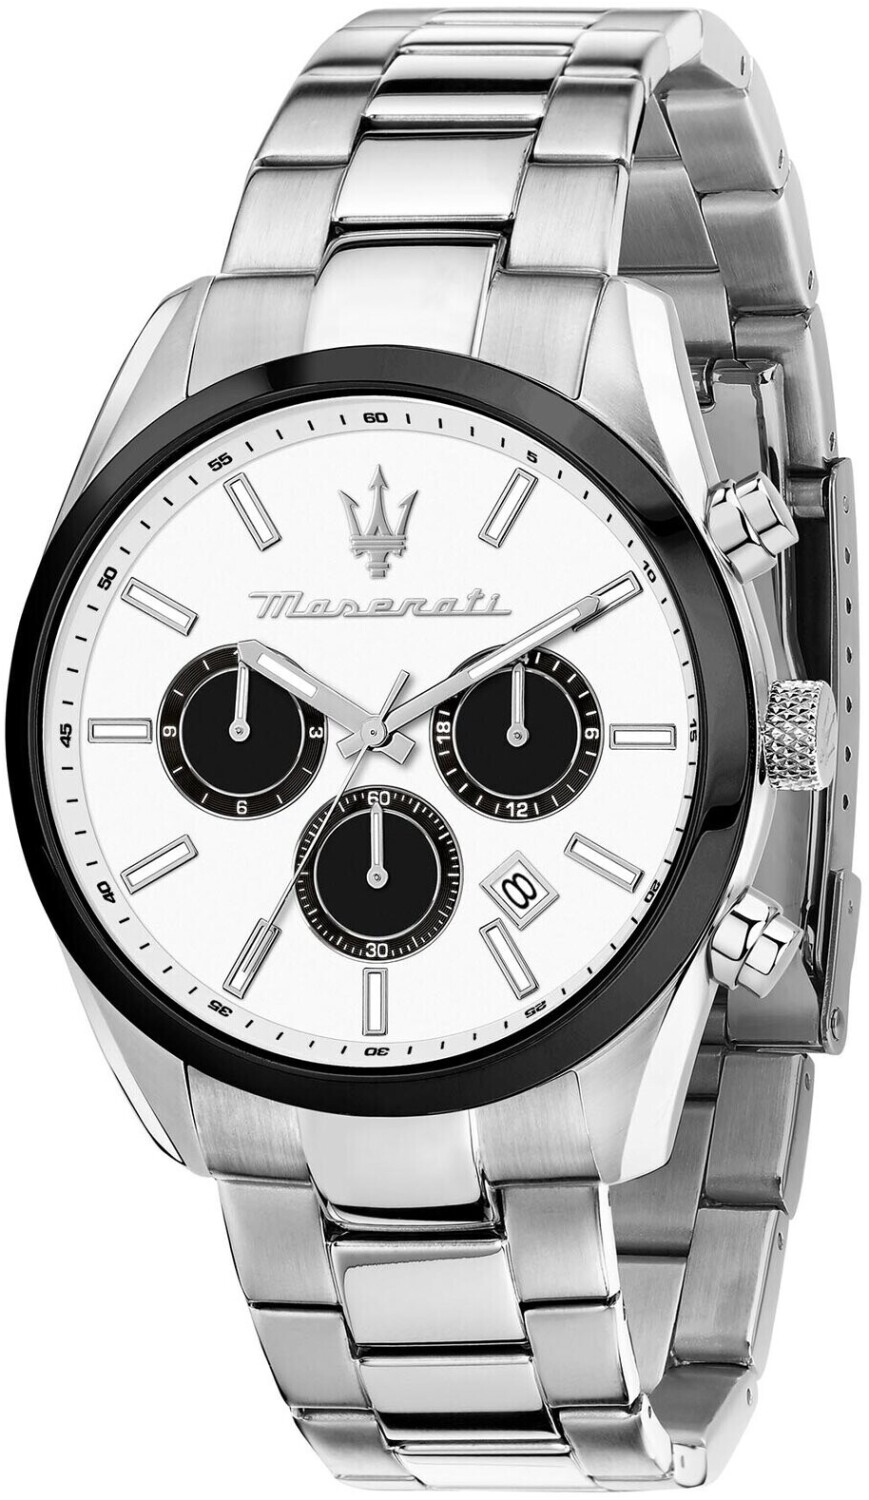 Maserati Attrazione Chronograph silver/white/black ab 135,32 € |  Preisvergleich bei